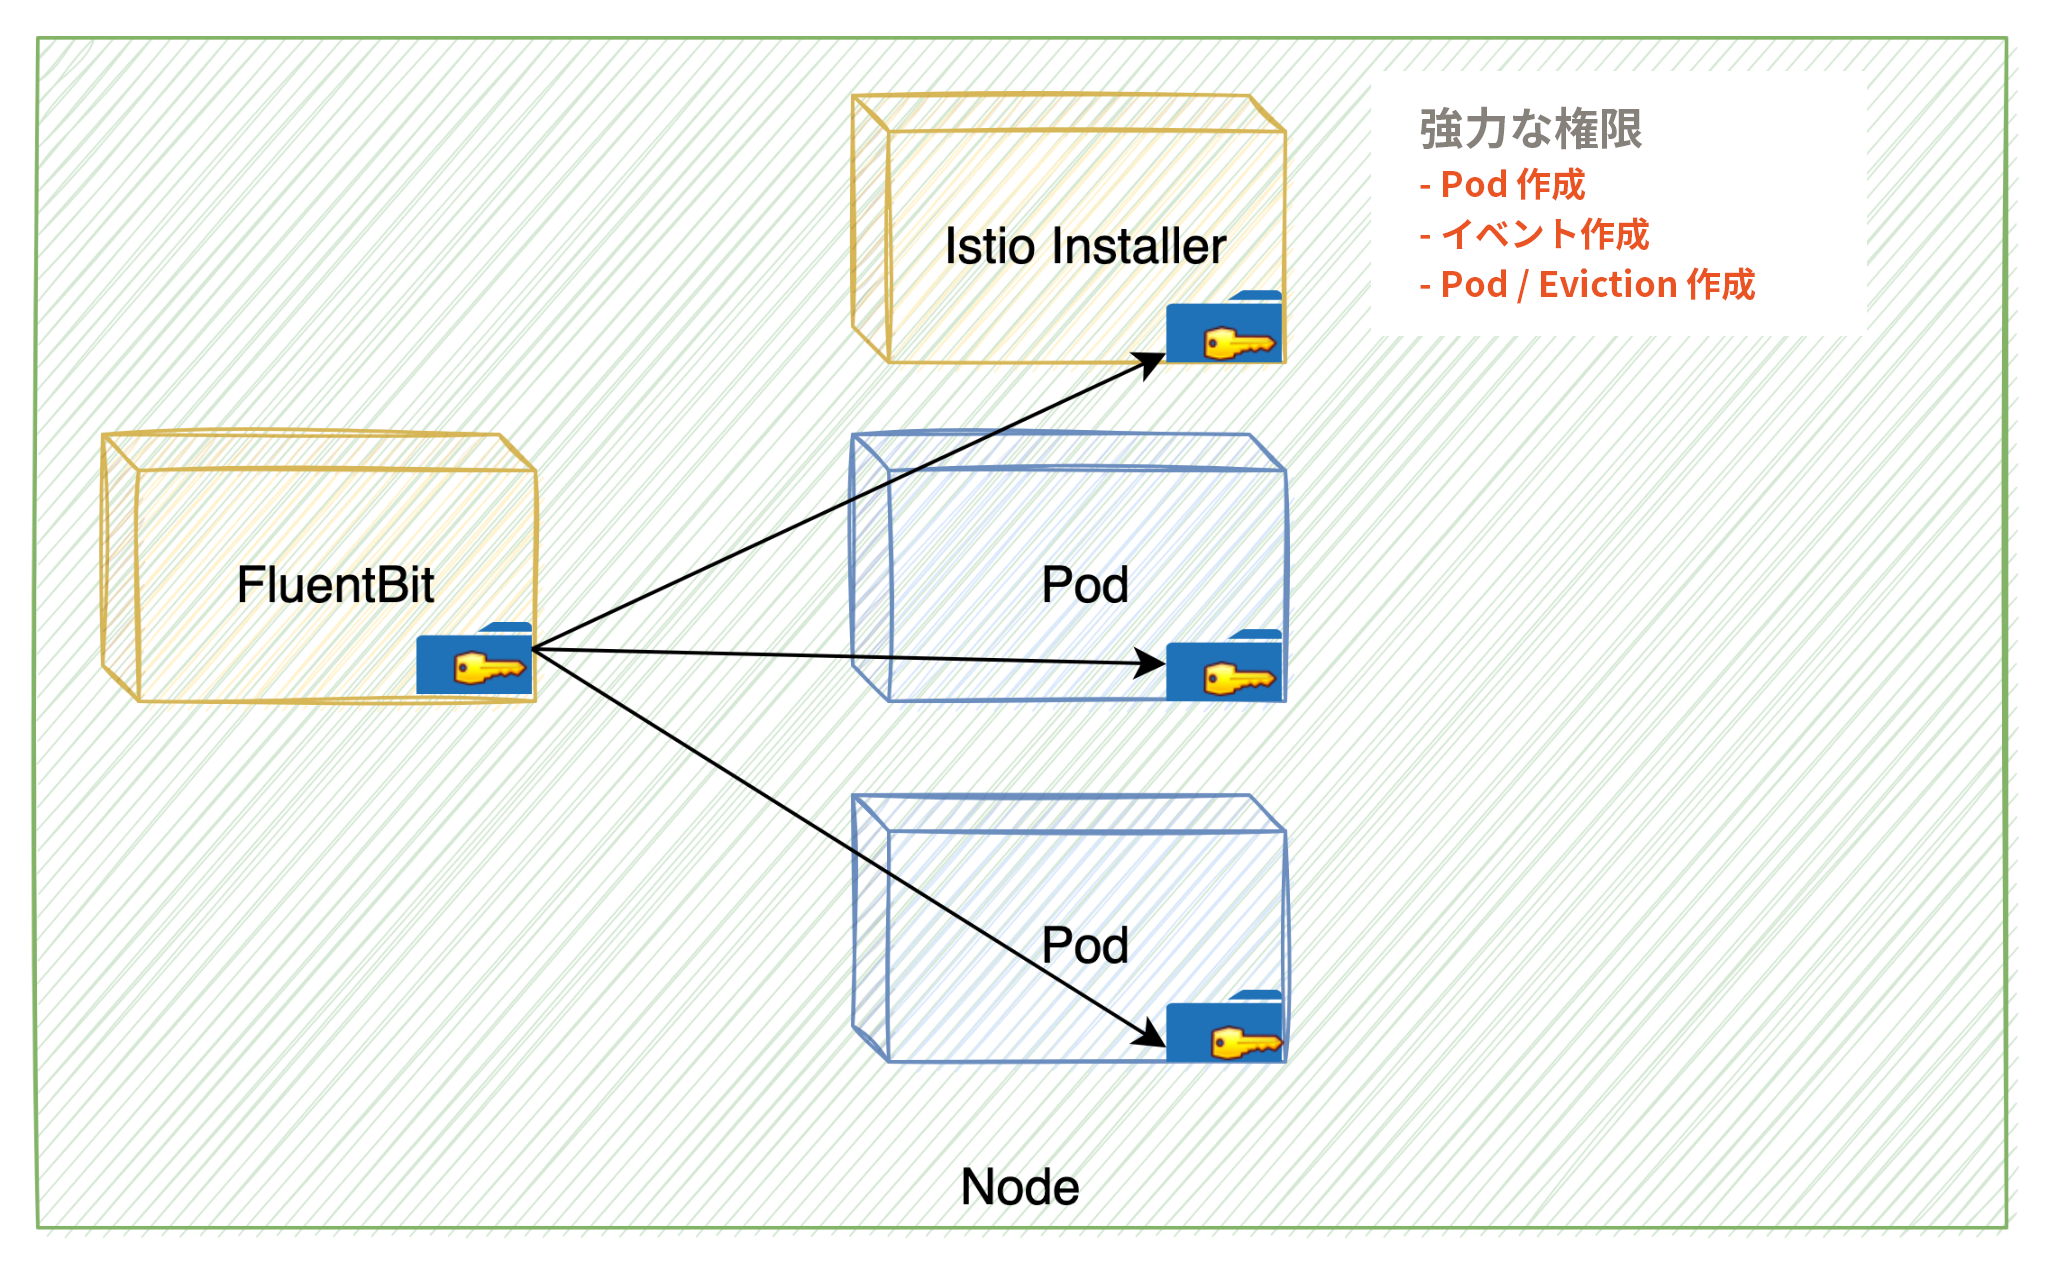 画像 5 は、Anthos Service Mesh の構成ミスを示した図です。Node は緑色の四角で表されています。Node の中には FluentBit と Istio Installer の黄色い四角が表示されています。FluentBit は Istio Installer と Pod (青い四角) にキーを付与しています。強力な権限: Pod を作成するイベントを作成するPod / Eviction を作成する 